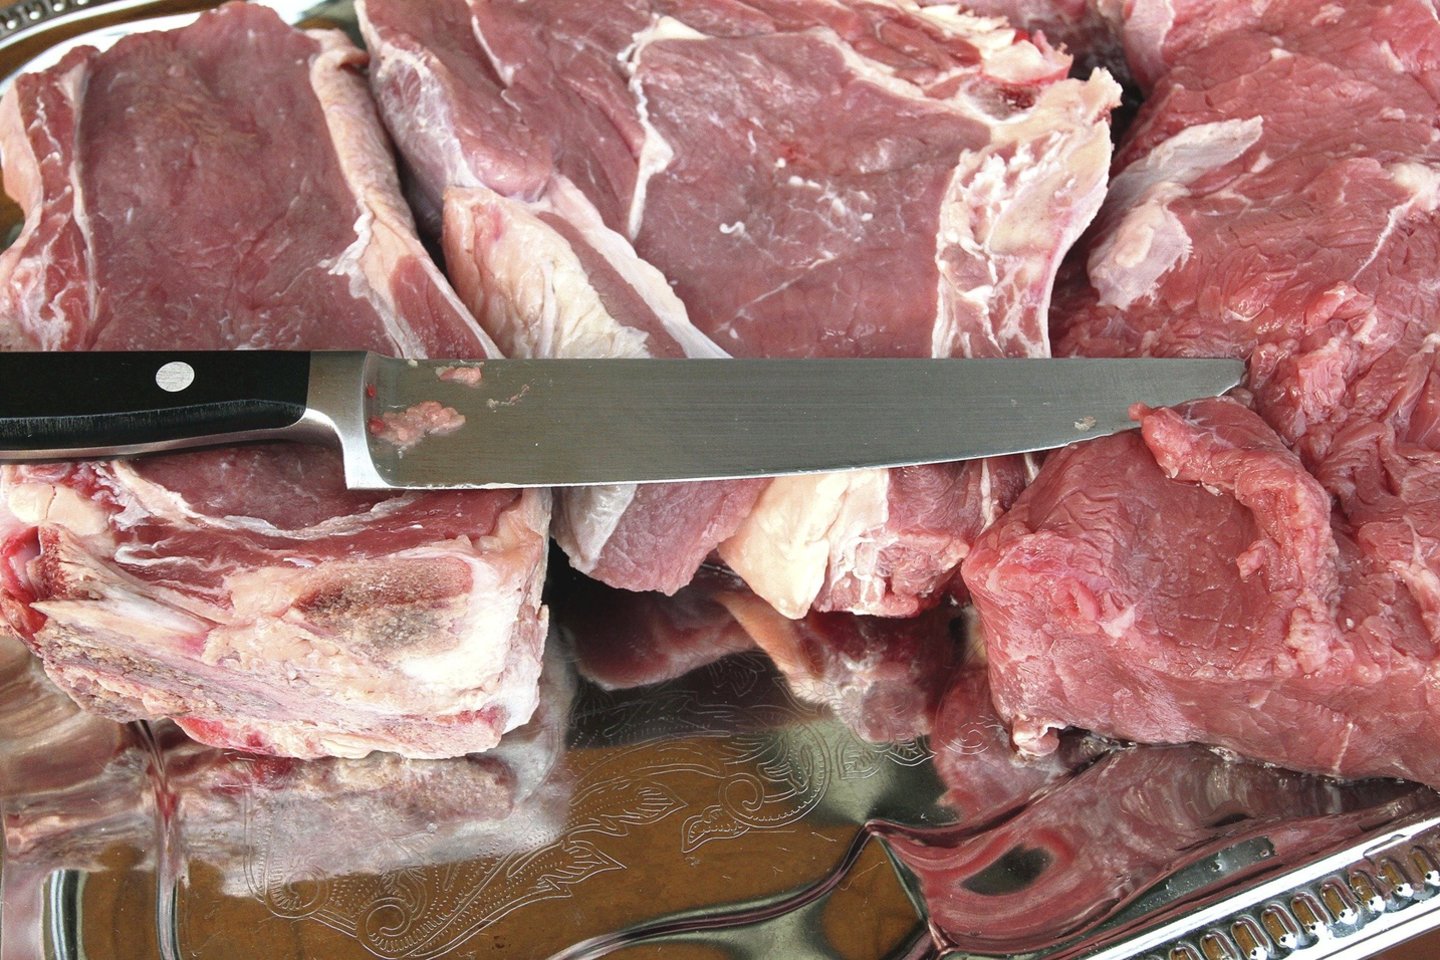 Ligotų ar kritusių galvijų mėsa iš Lenkijos galėjo patekti ir į kitas valstybes.<br>Nuotr. iš LR archyvo